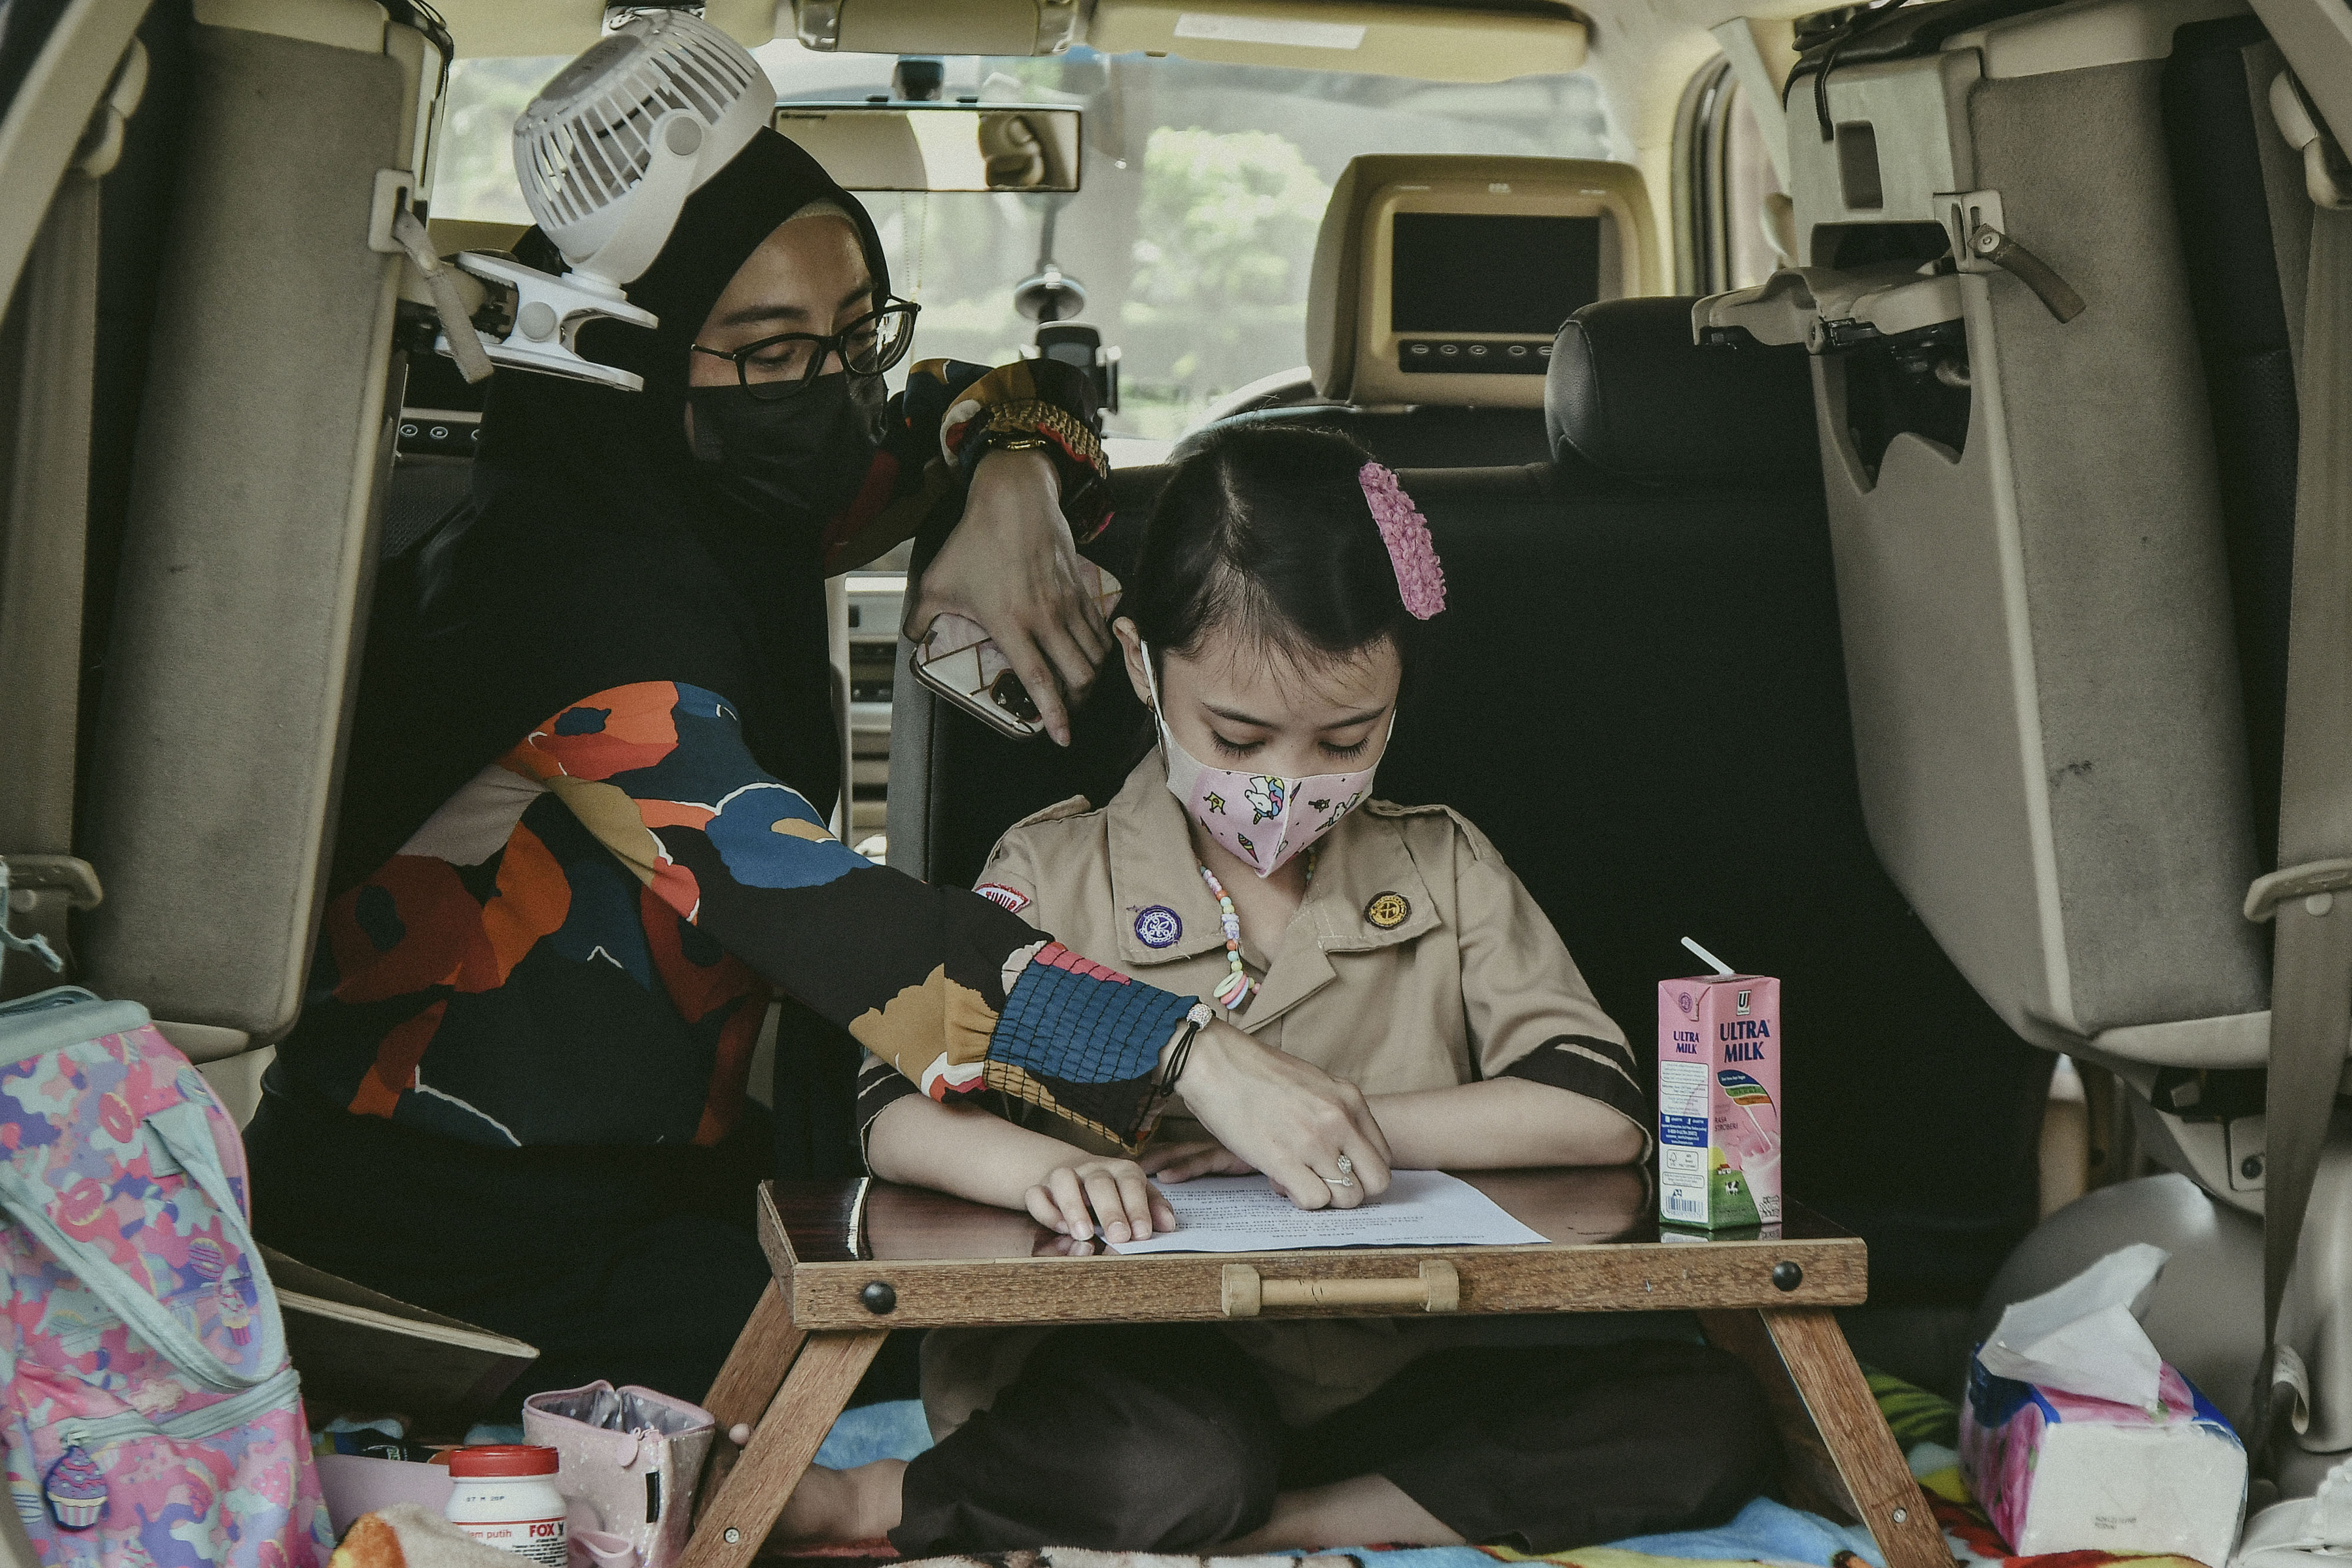 Orang tua murid membimbing anaknya saat kegiatan belajar mengajar berlangsung./Fakhri Hermansyah/ANTARA FOTO